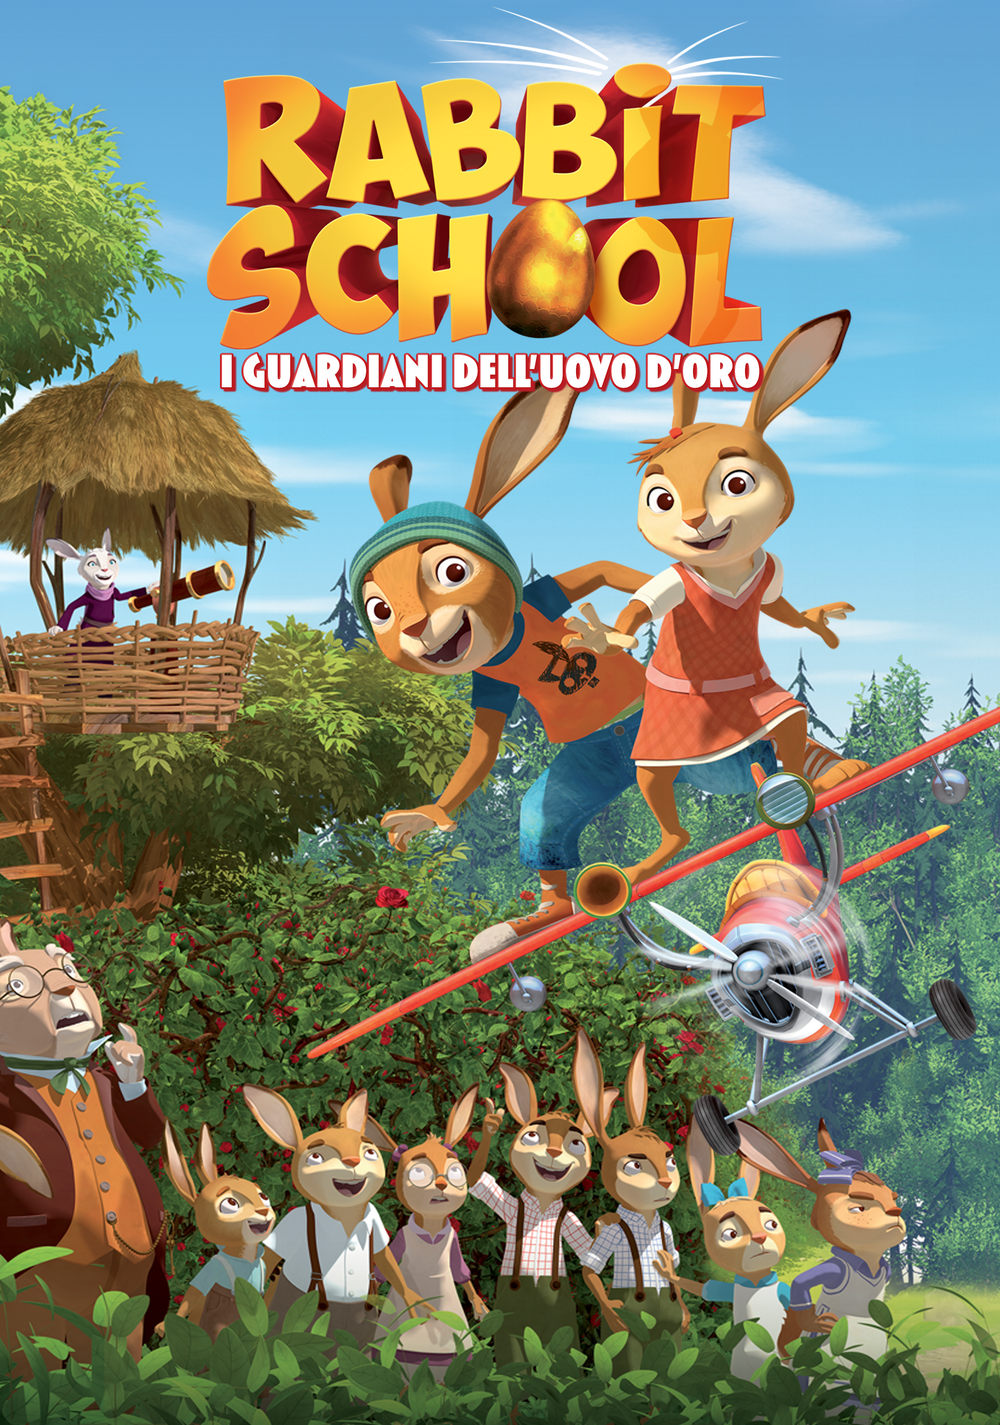 Rabbit School – I guardiani dell’uovo d’oro [HD] (2018)